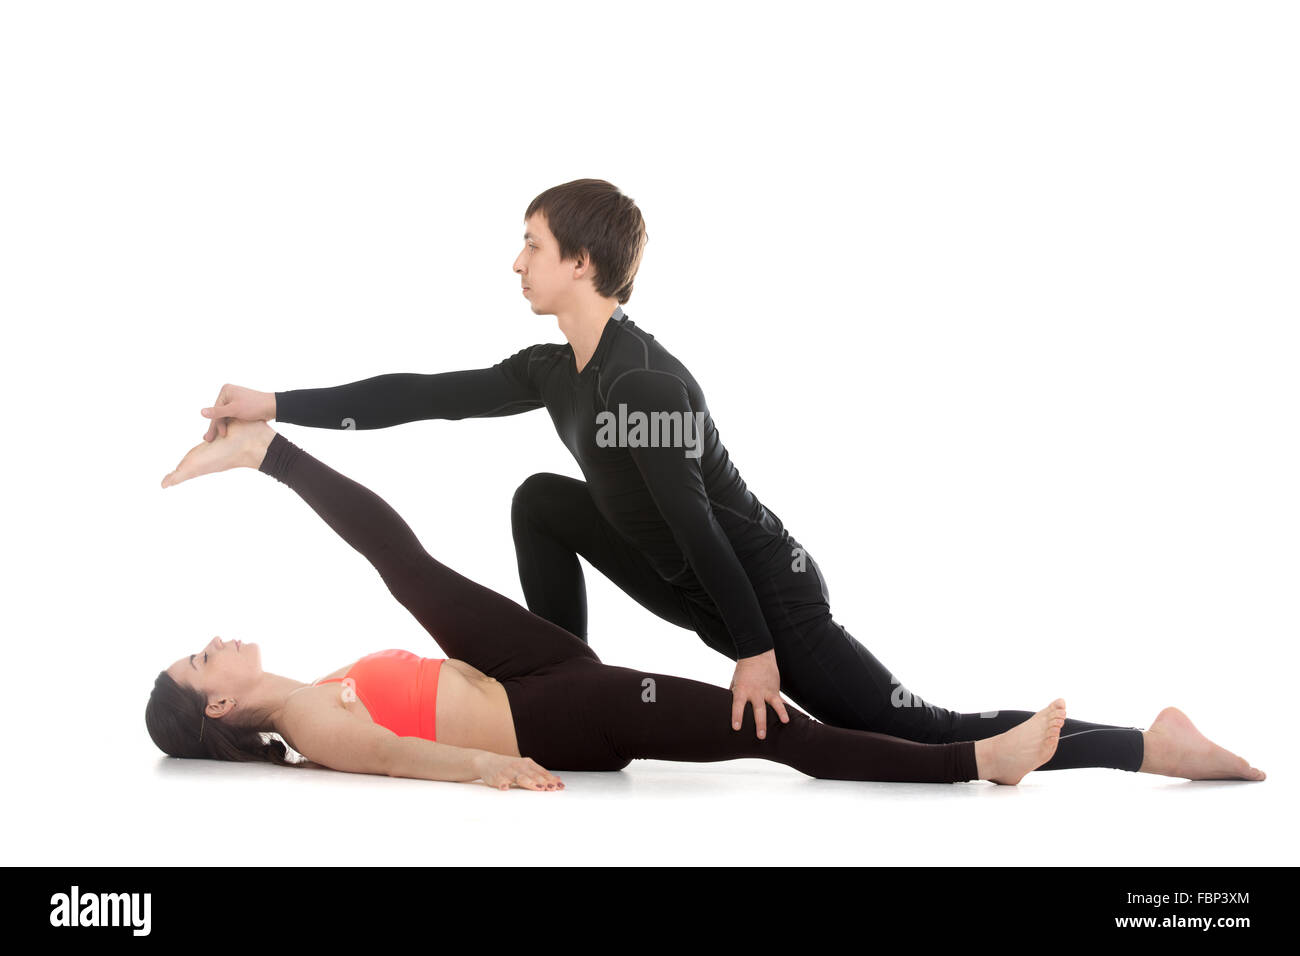 Deux sportifs pratiquant le yoga avec partenaire, jeune homme coaching, aidant à faire fille main inclinables à la posture du gros orteil, supta Banque D'Images